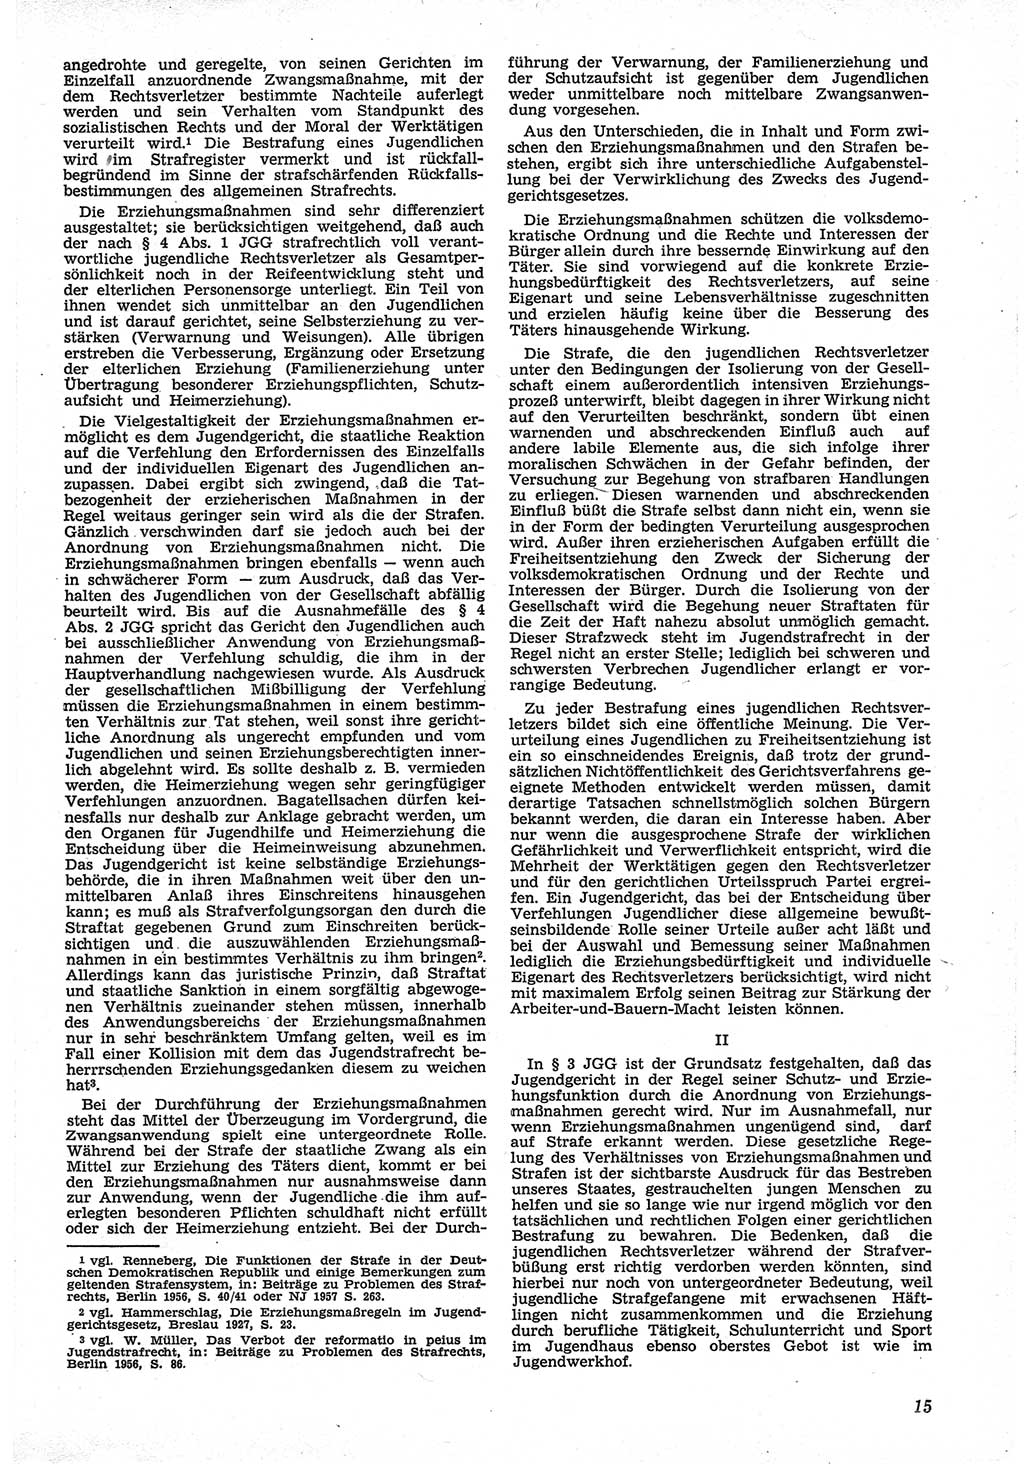 Neue Justiz (NJ), Zeitschrift für Recht und Rechtswissenschaft [Deutsche Demokratische Republik (DDR)], 12. Jahrgang 1958, Seite 15 (NJ DDR 1958, S. 15)